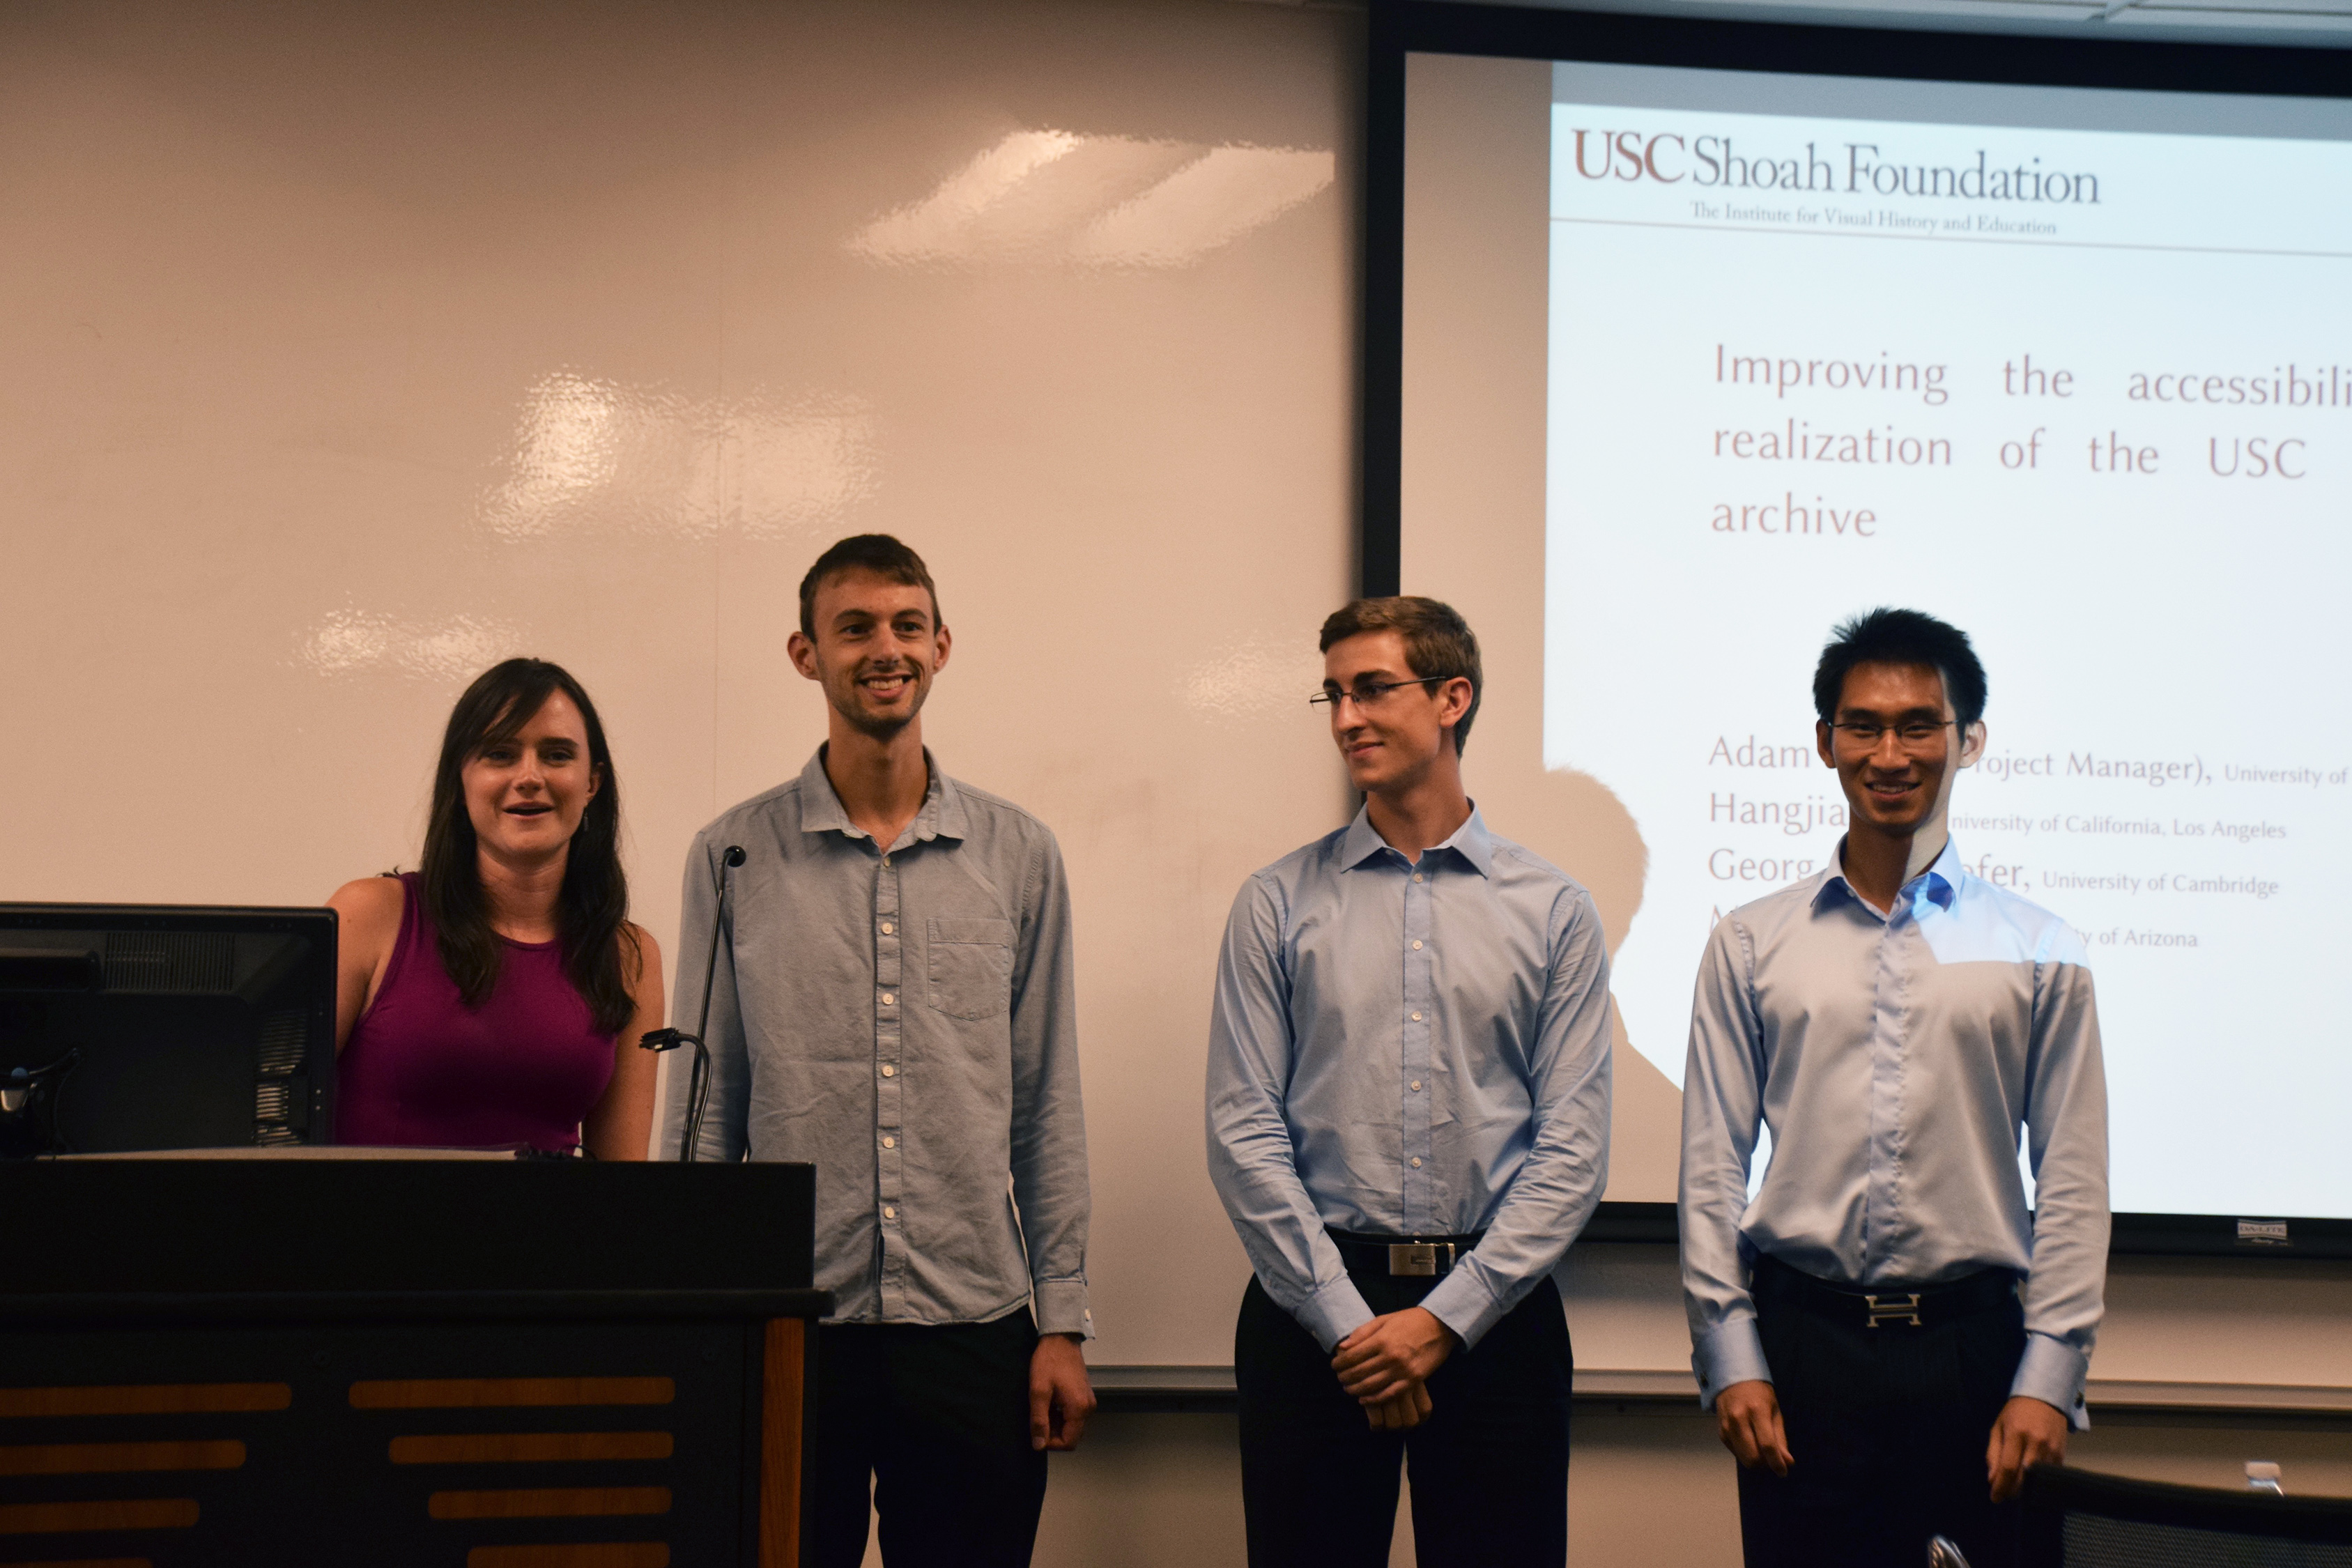 From left: Megan Shearer, Adam Foster, Georg Maierhofer, and Hangjian Li present their project to USC Shoah Foundation staff